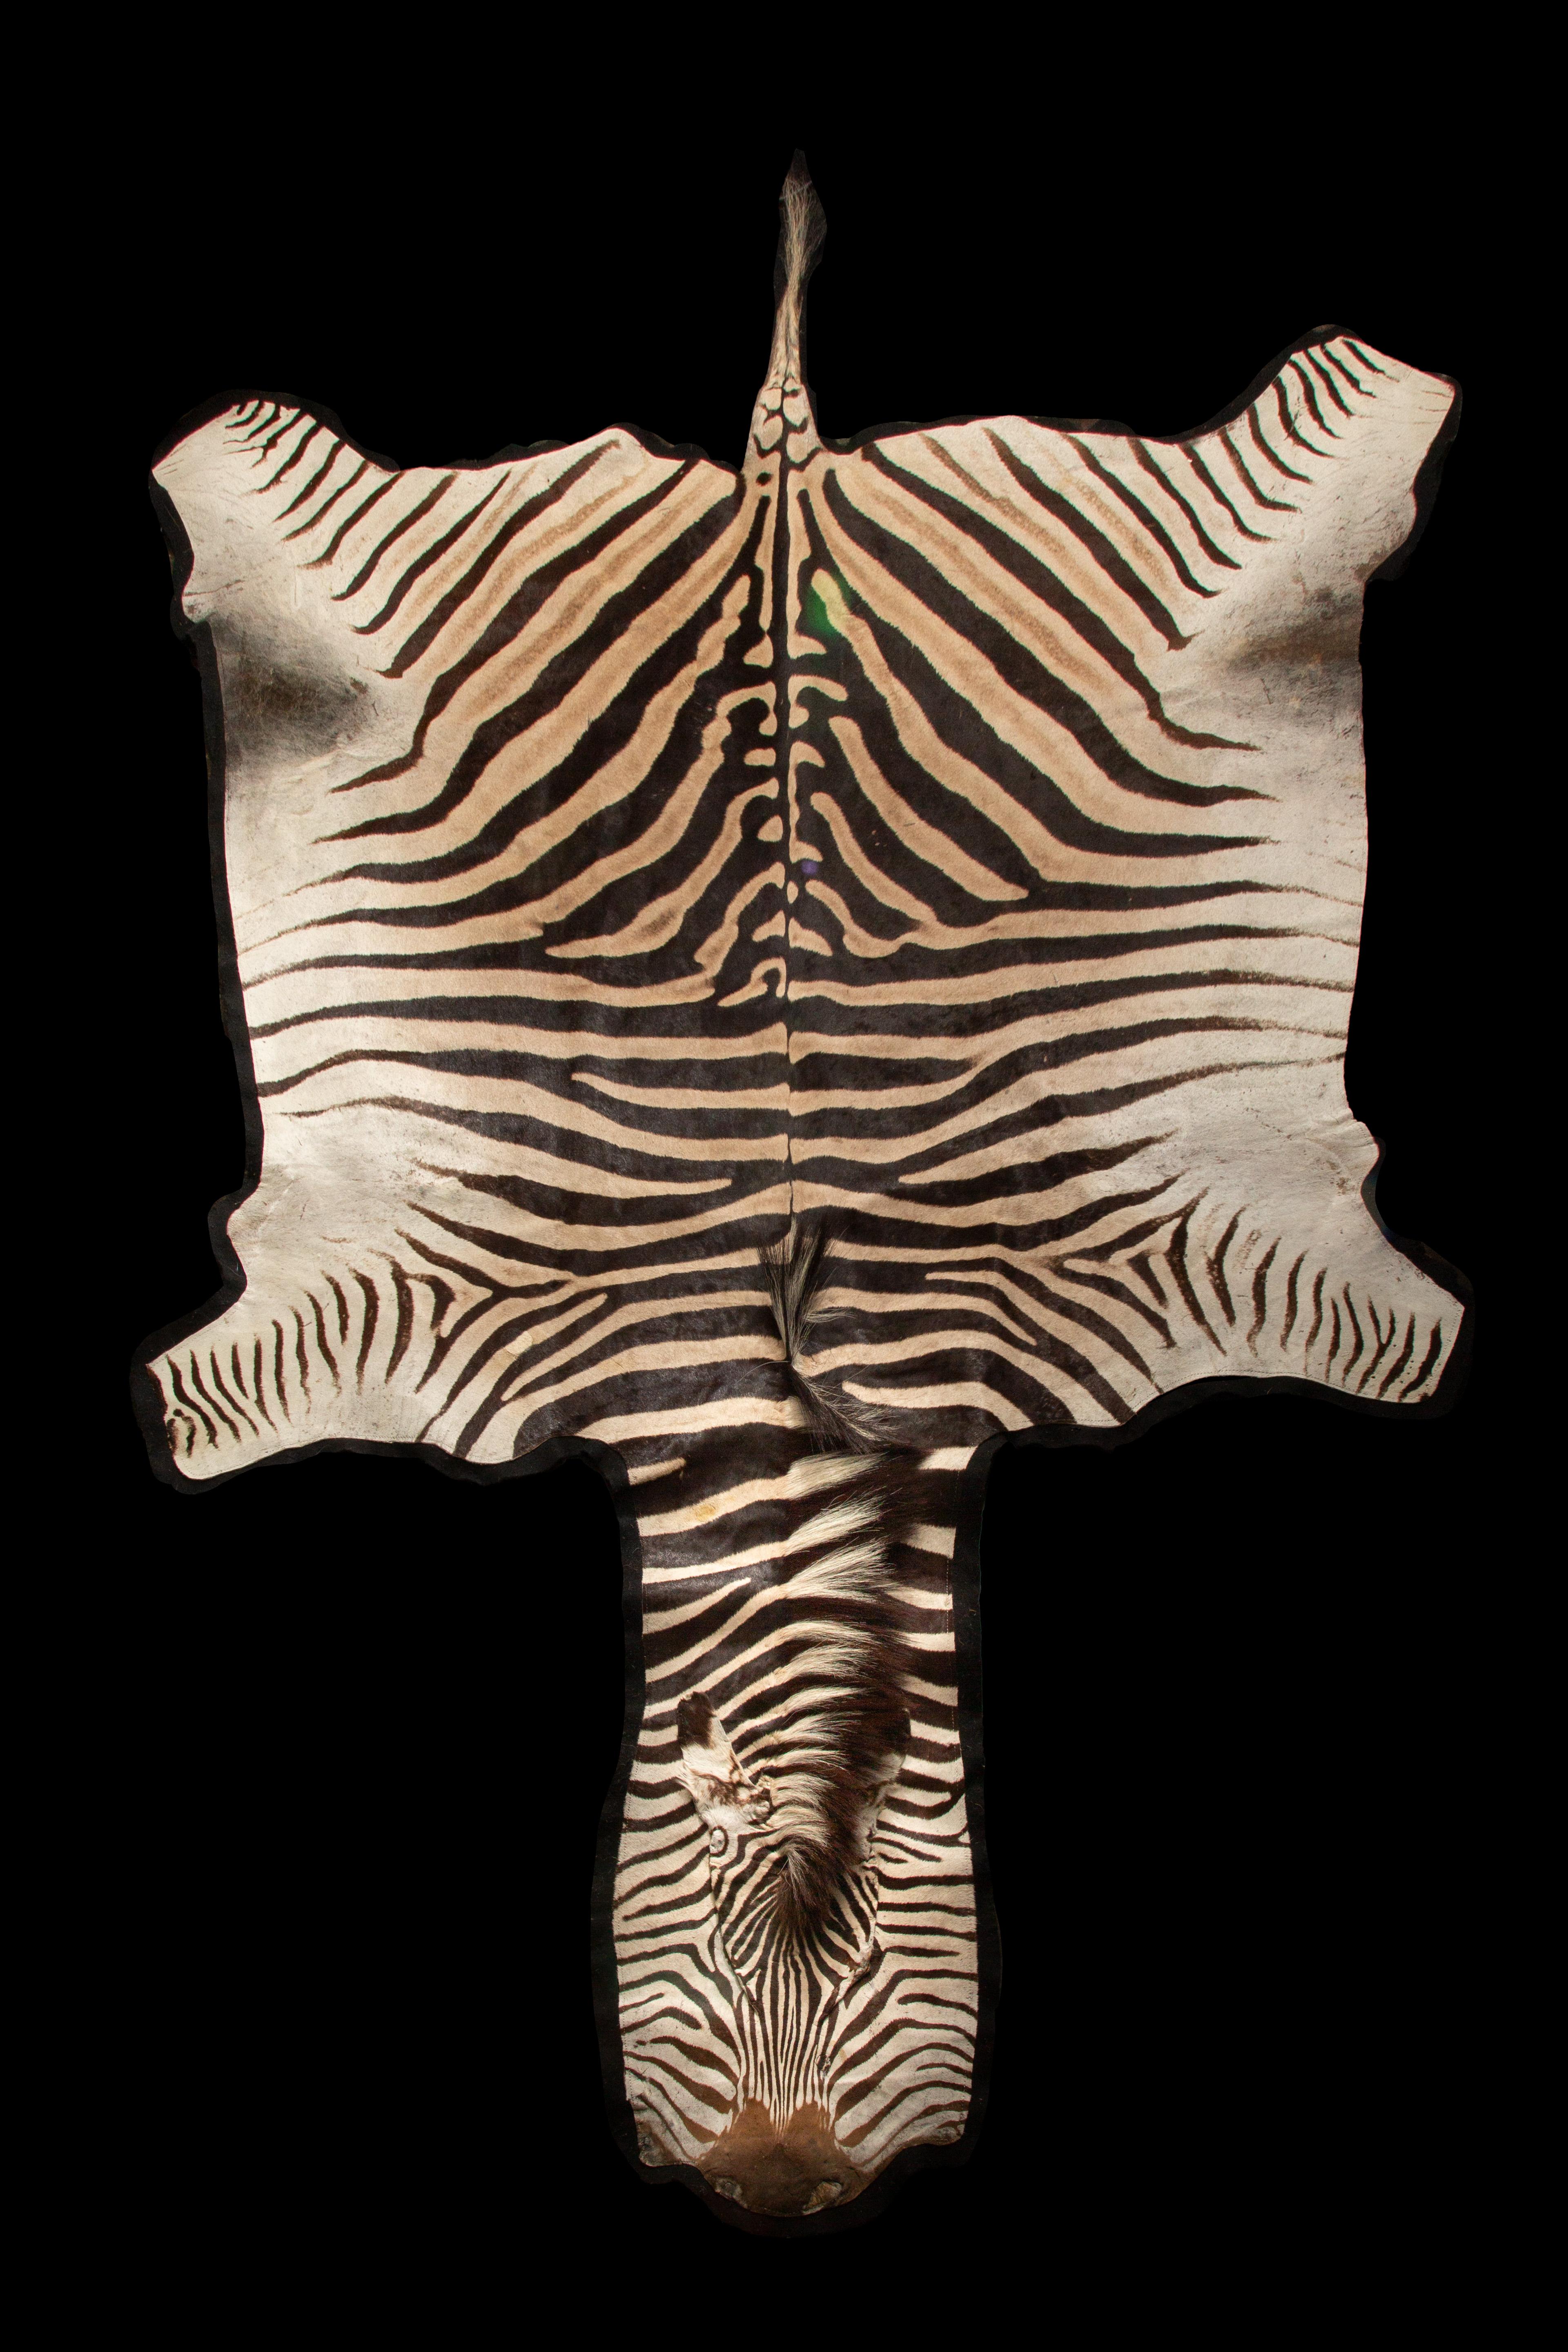 Extra großer Zebra-Teppich. Gefertigt aus feinstem Burchell's Zebrafell, einer südafrikanischen Unterart der Steppen, misst dieser exquisite Teppich etwa 136